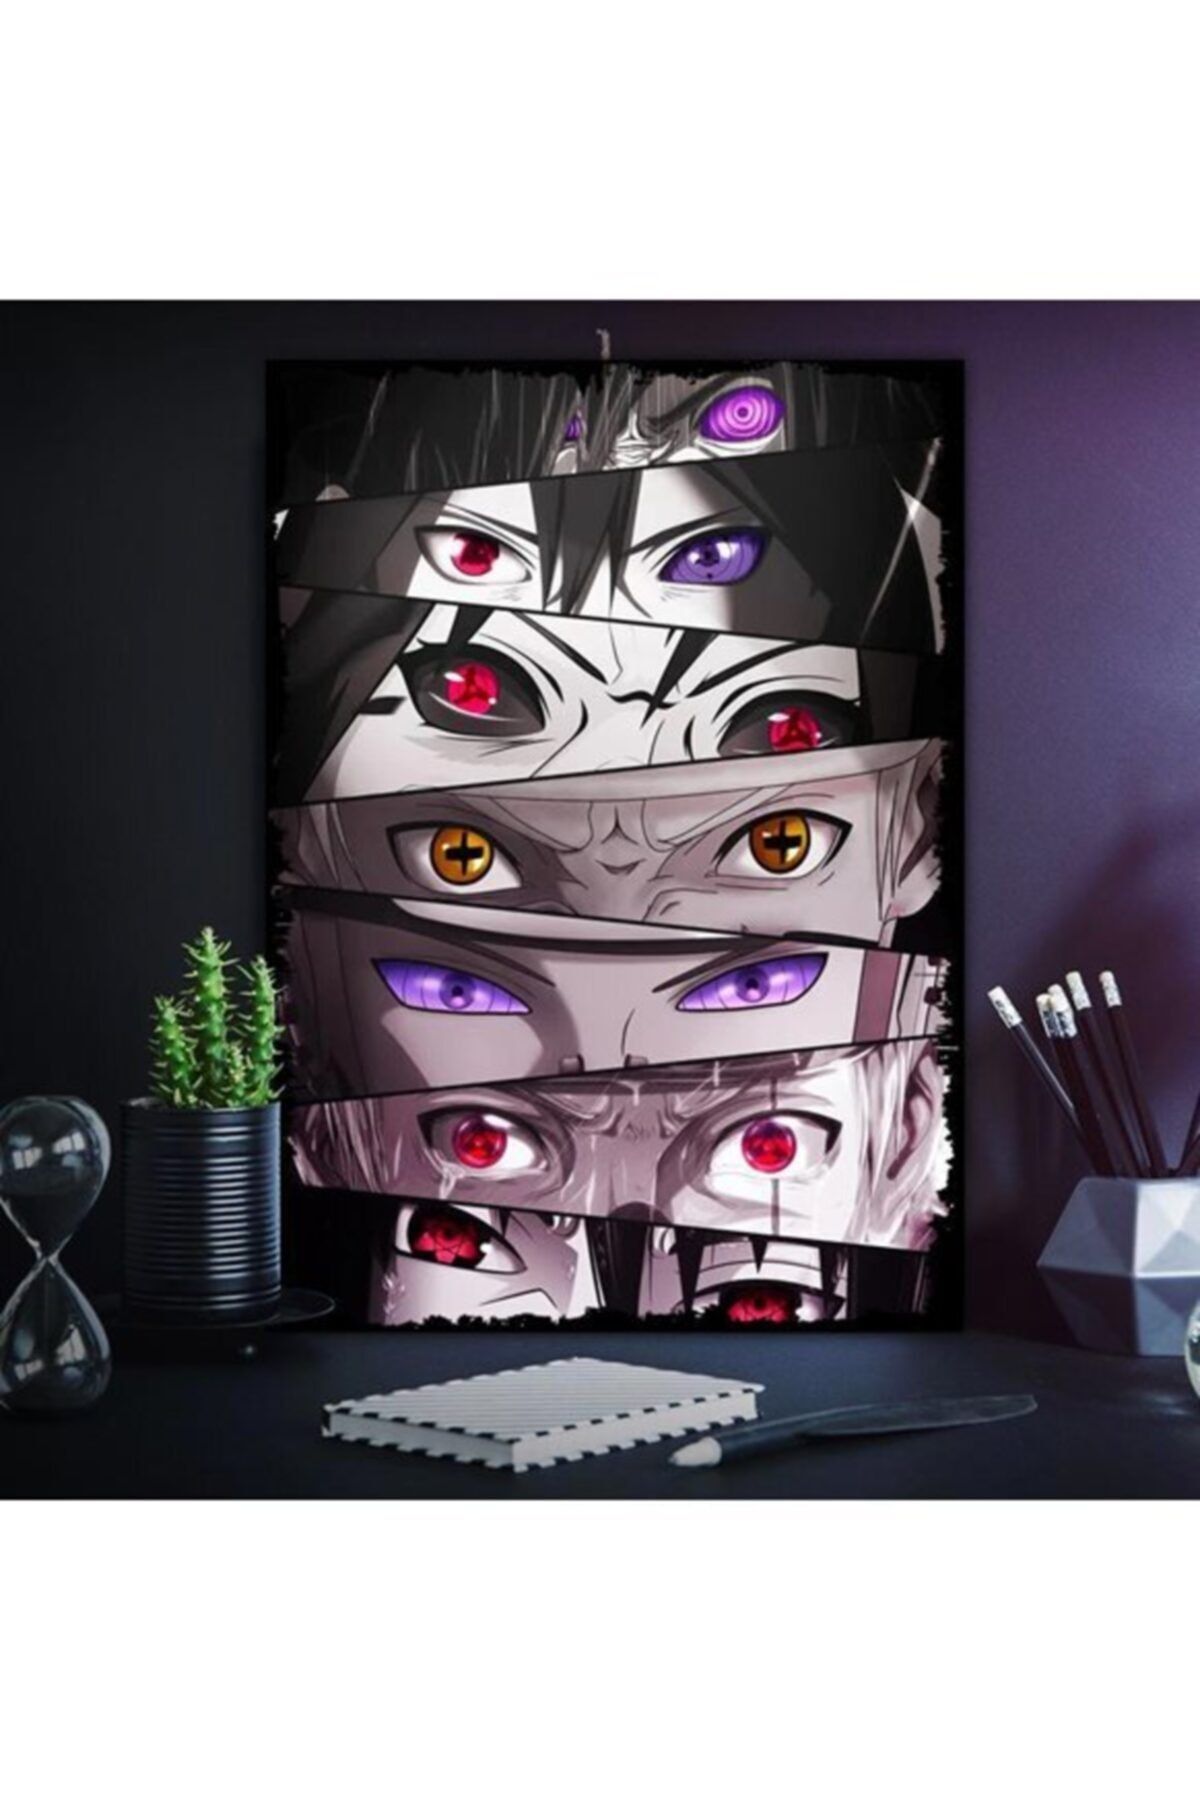 Tontilika Naruto Gözleri Anime Dizi Tasarım 50x70cm Hediyelik Dekoratif 8mm Ahşap Tablo